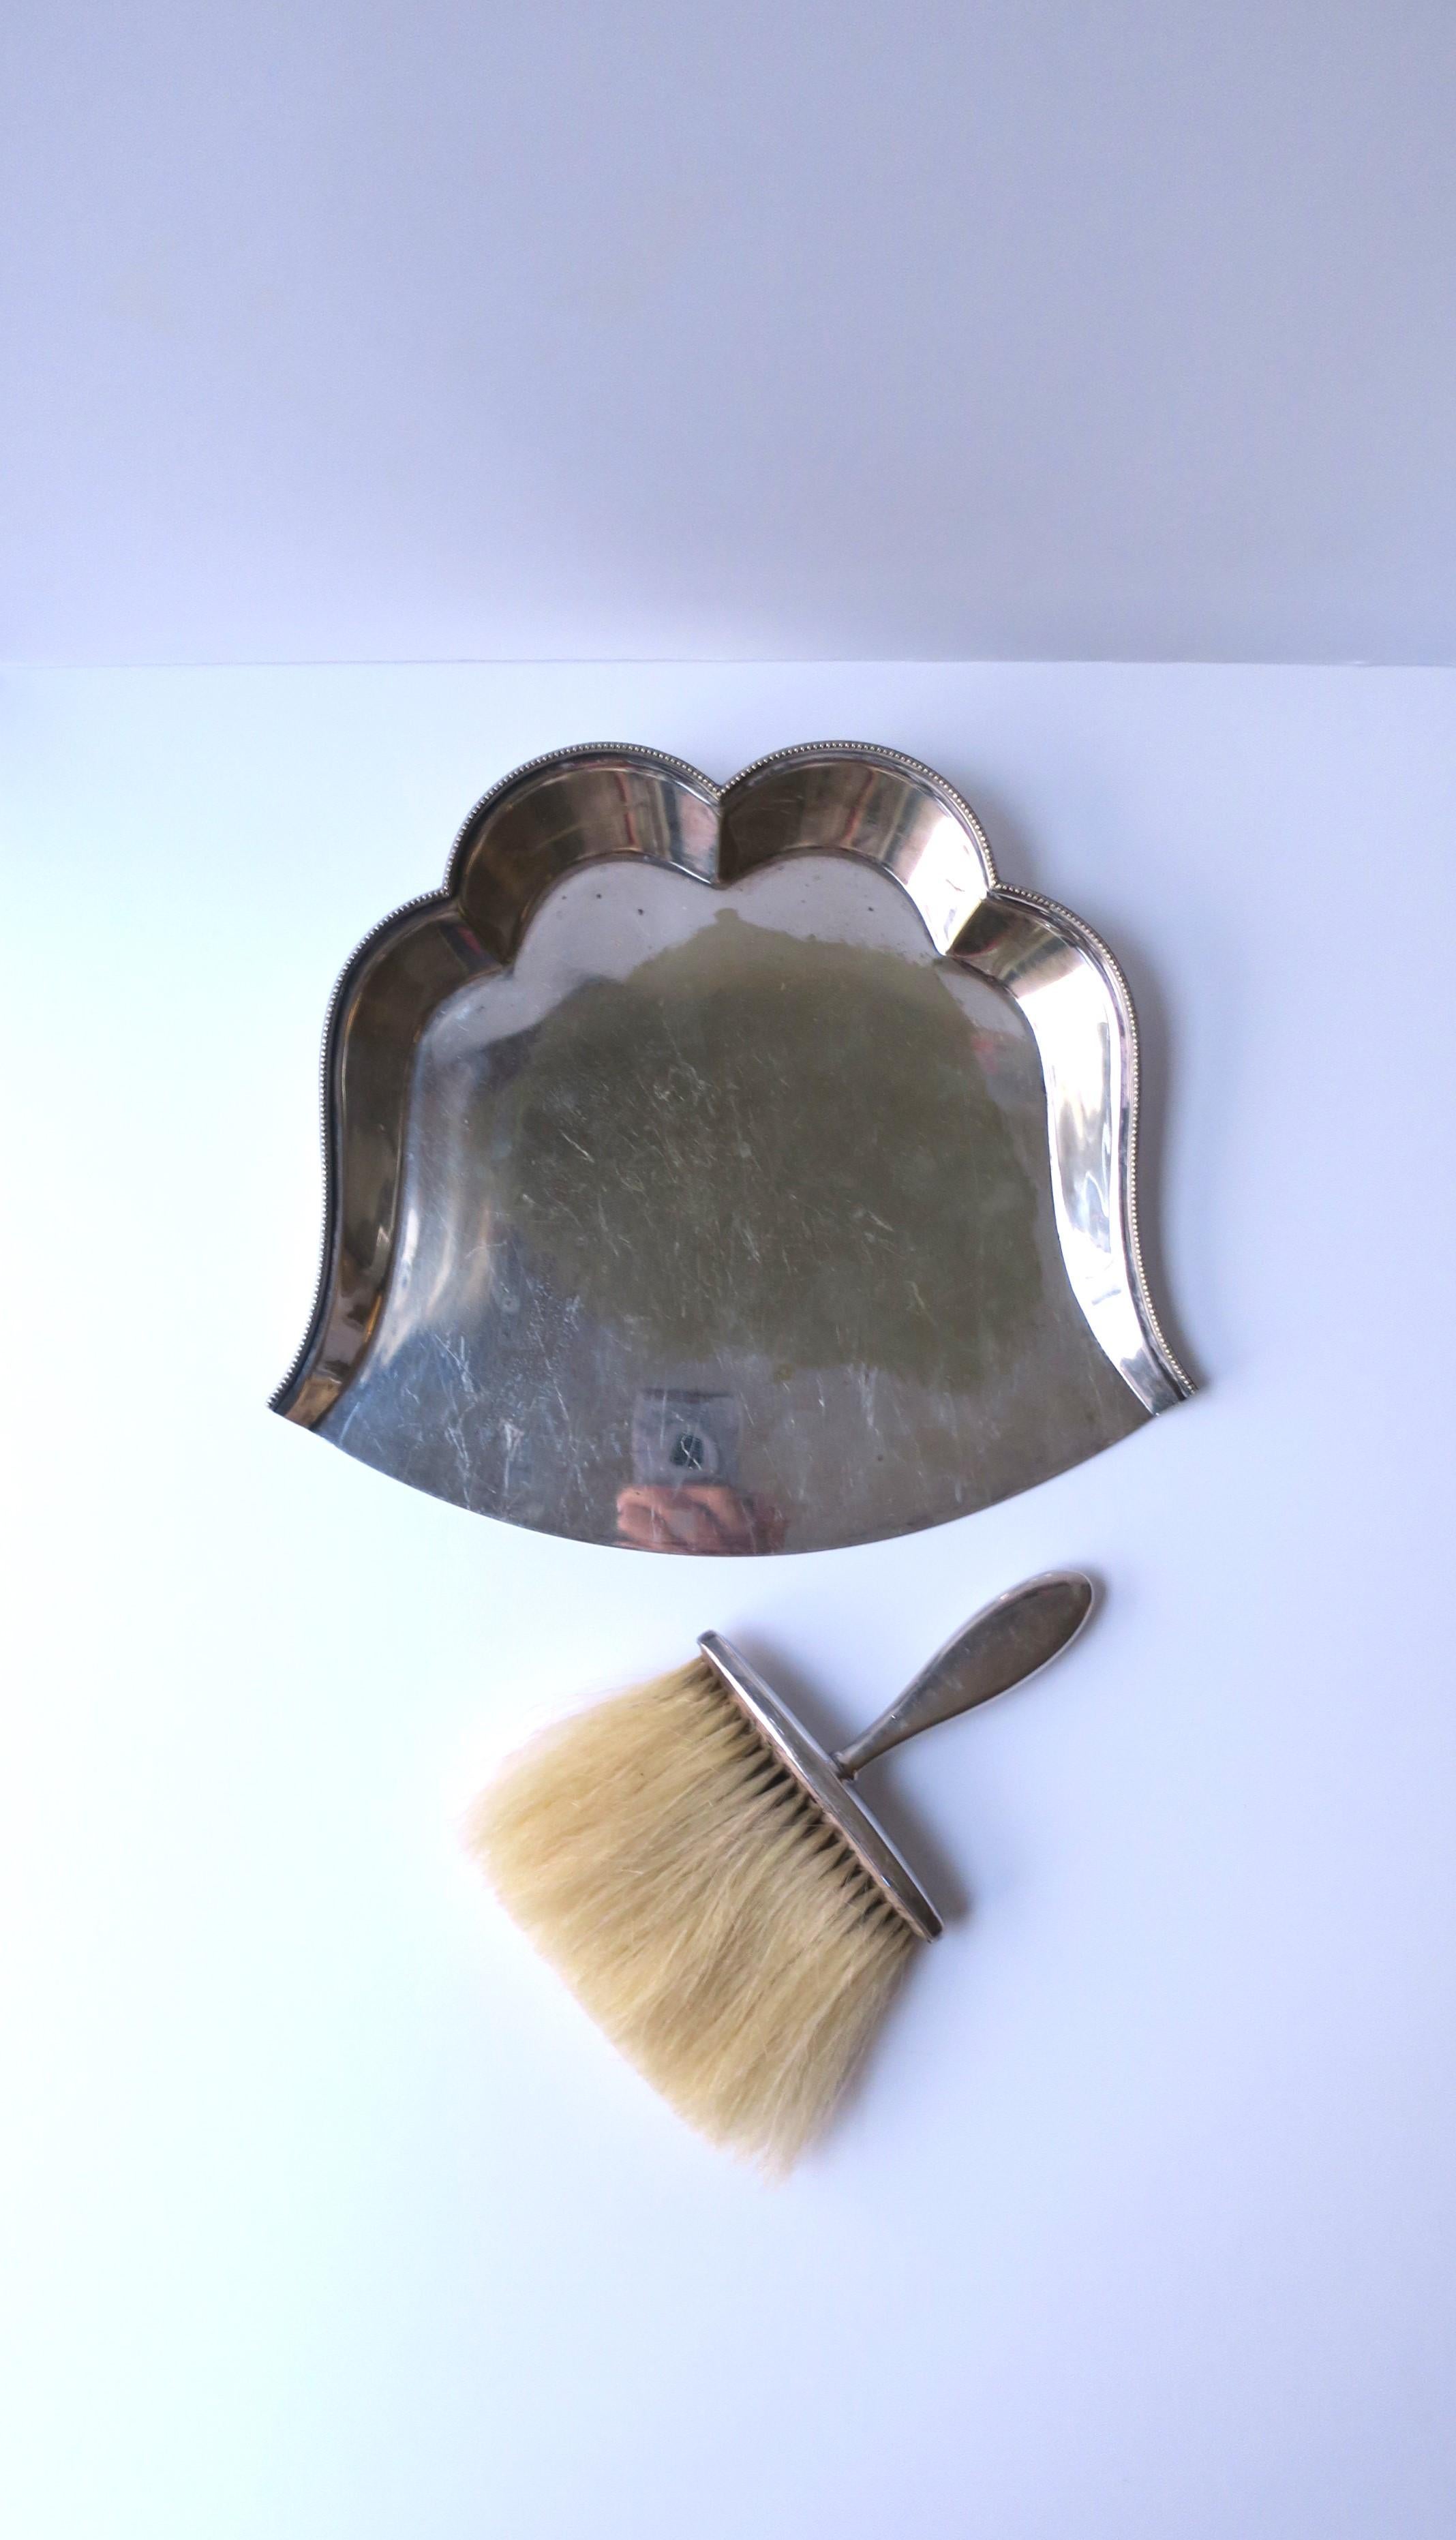 Una bella padella e frusta da tavolo in argento di Hardy Bros. Sidney & Brisbane, circa 20° secolo, Inghilterra. Con il marchio del produttore su entrambi, come mostrato nelle immagini. 

Dimensioni: 
Padella/vassoio: 1,75